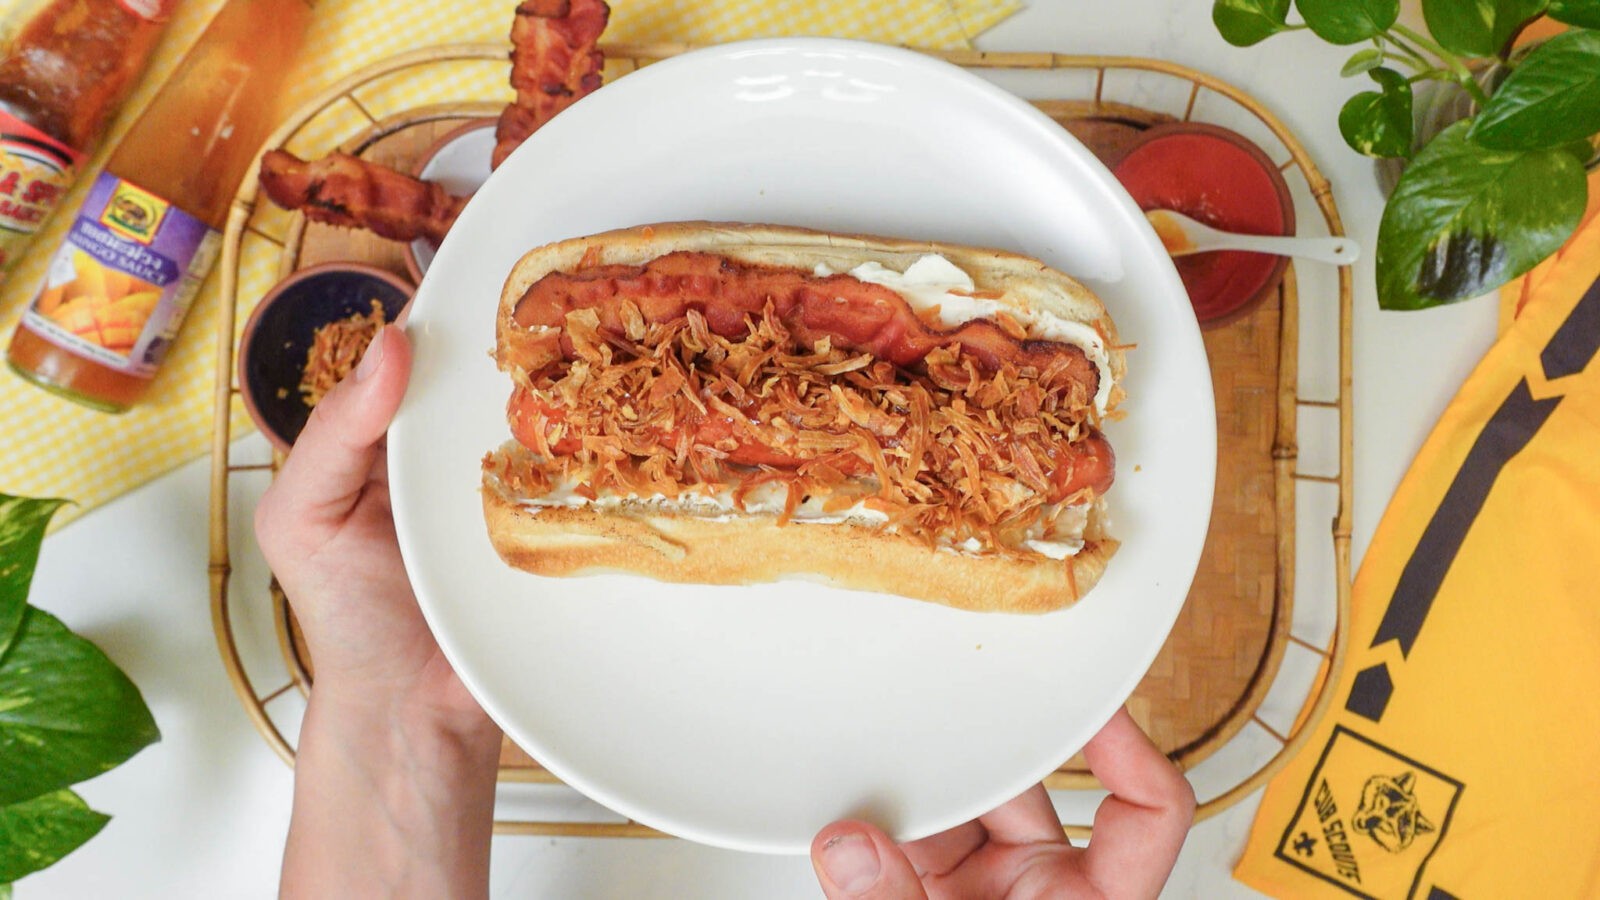 Seattle-style hot dog - Wikipedia